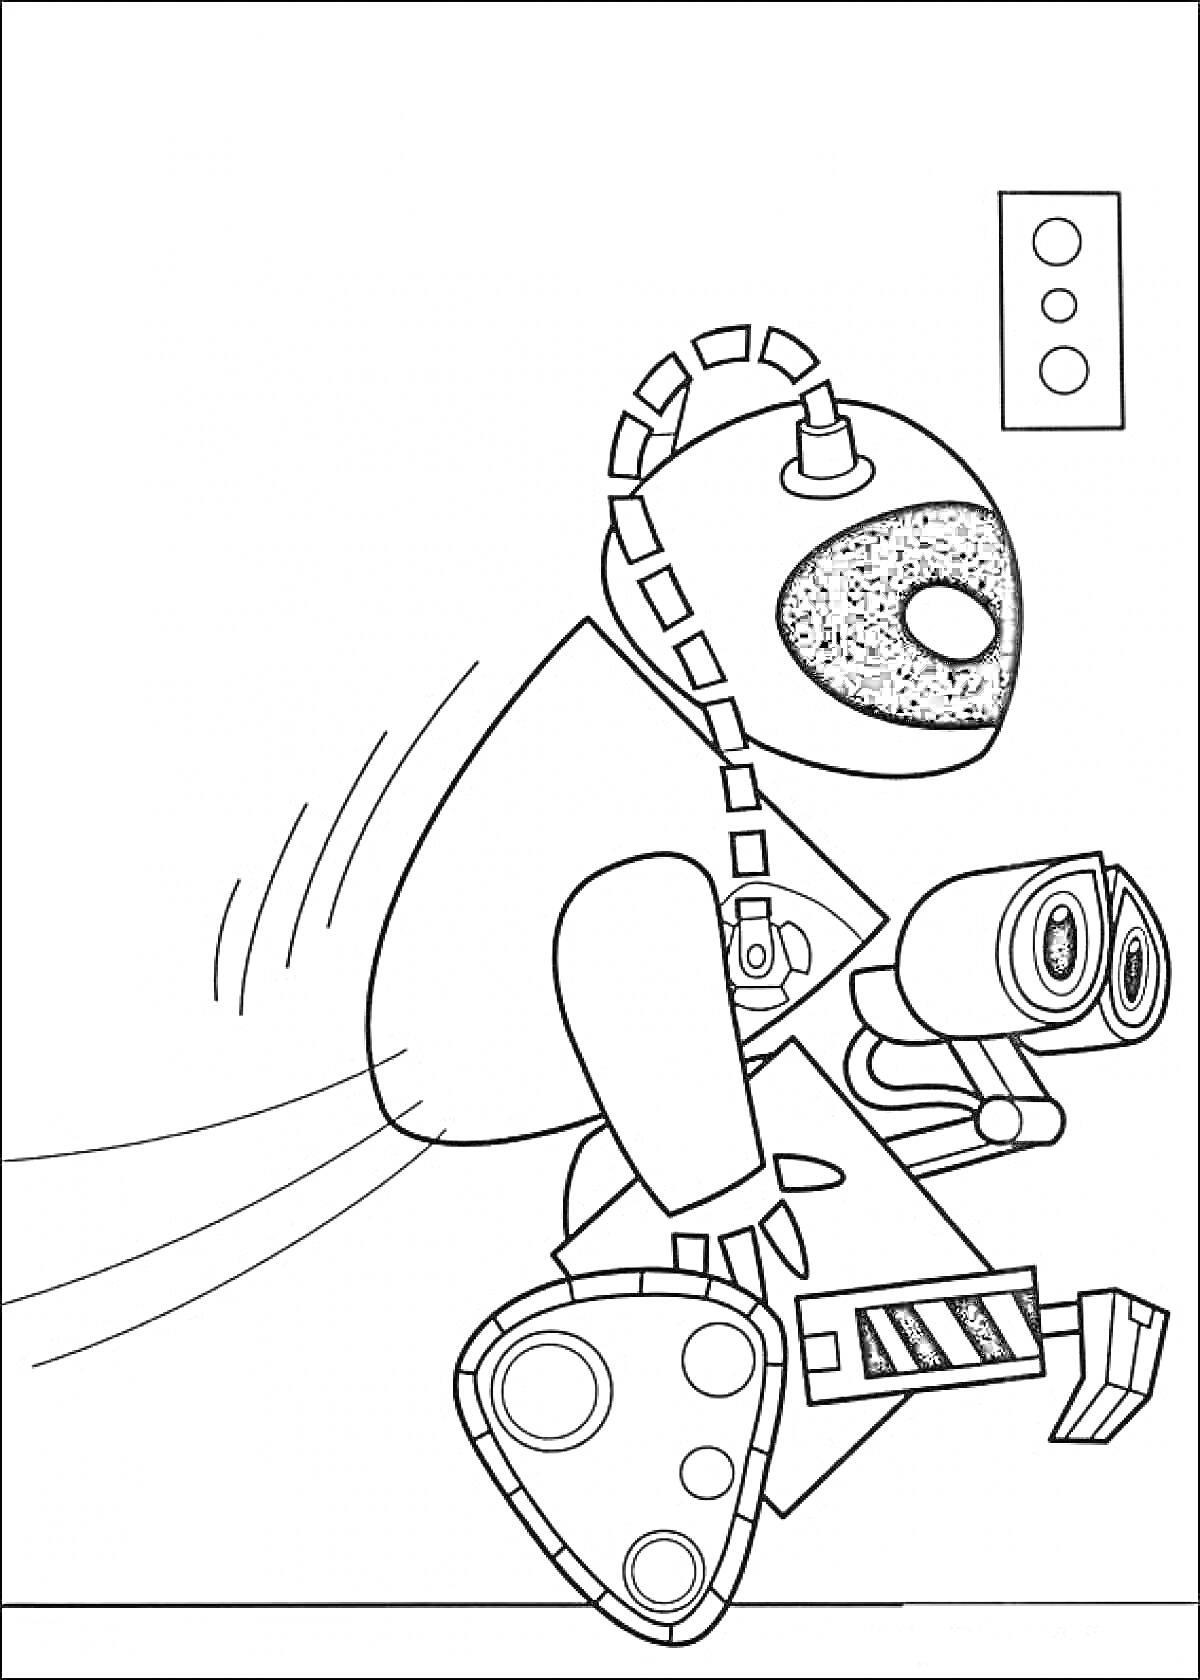 Валли и робот-спутник возле двери с кнопками